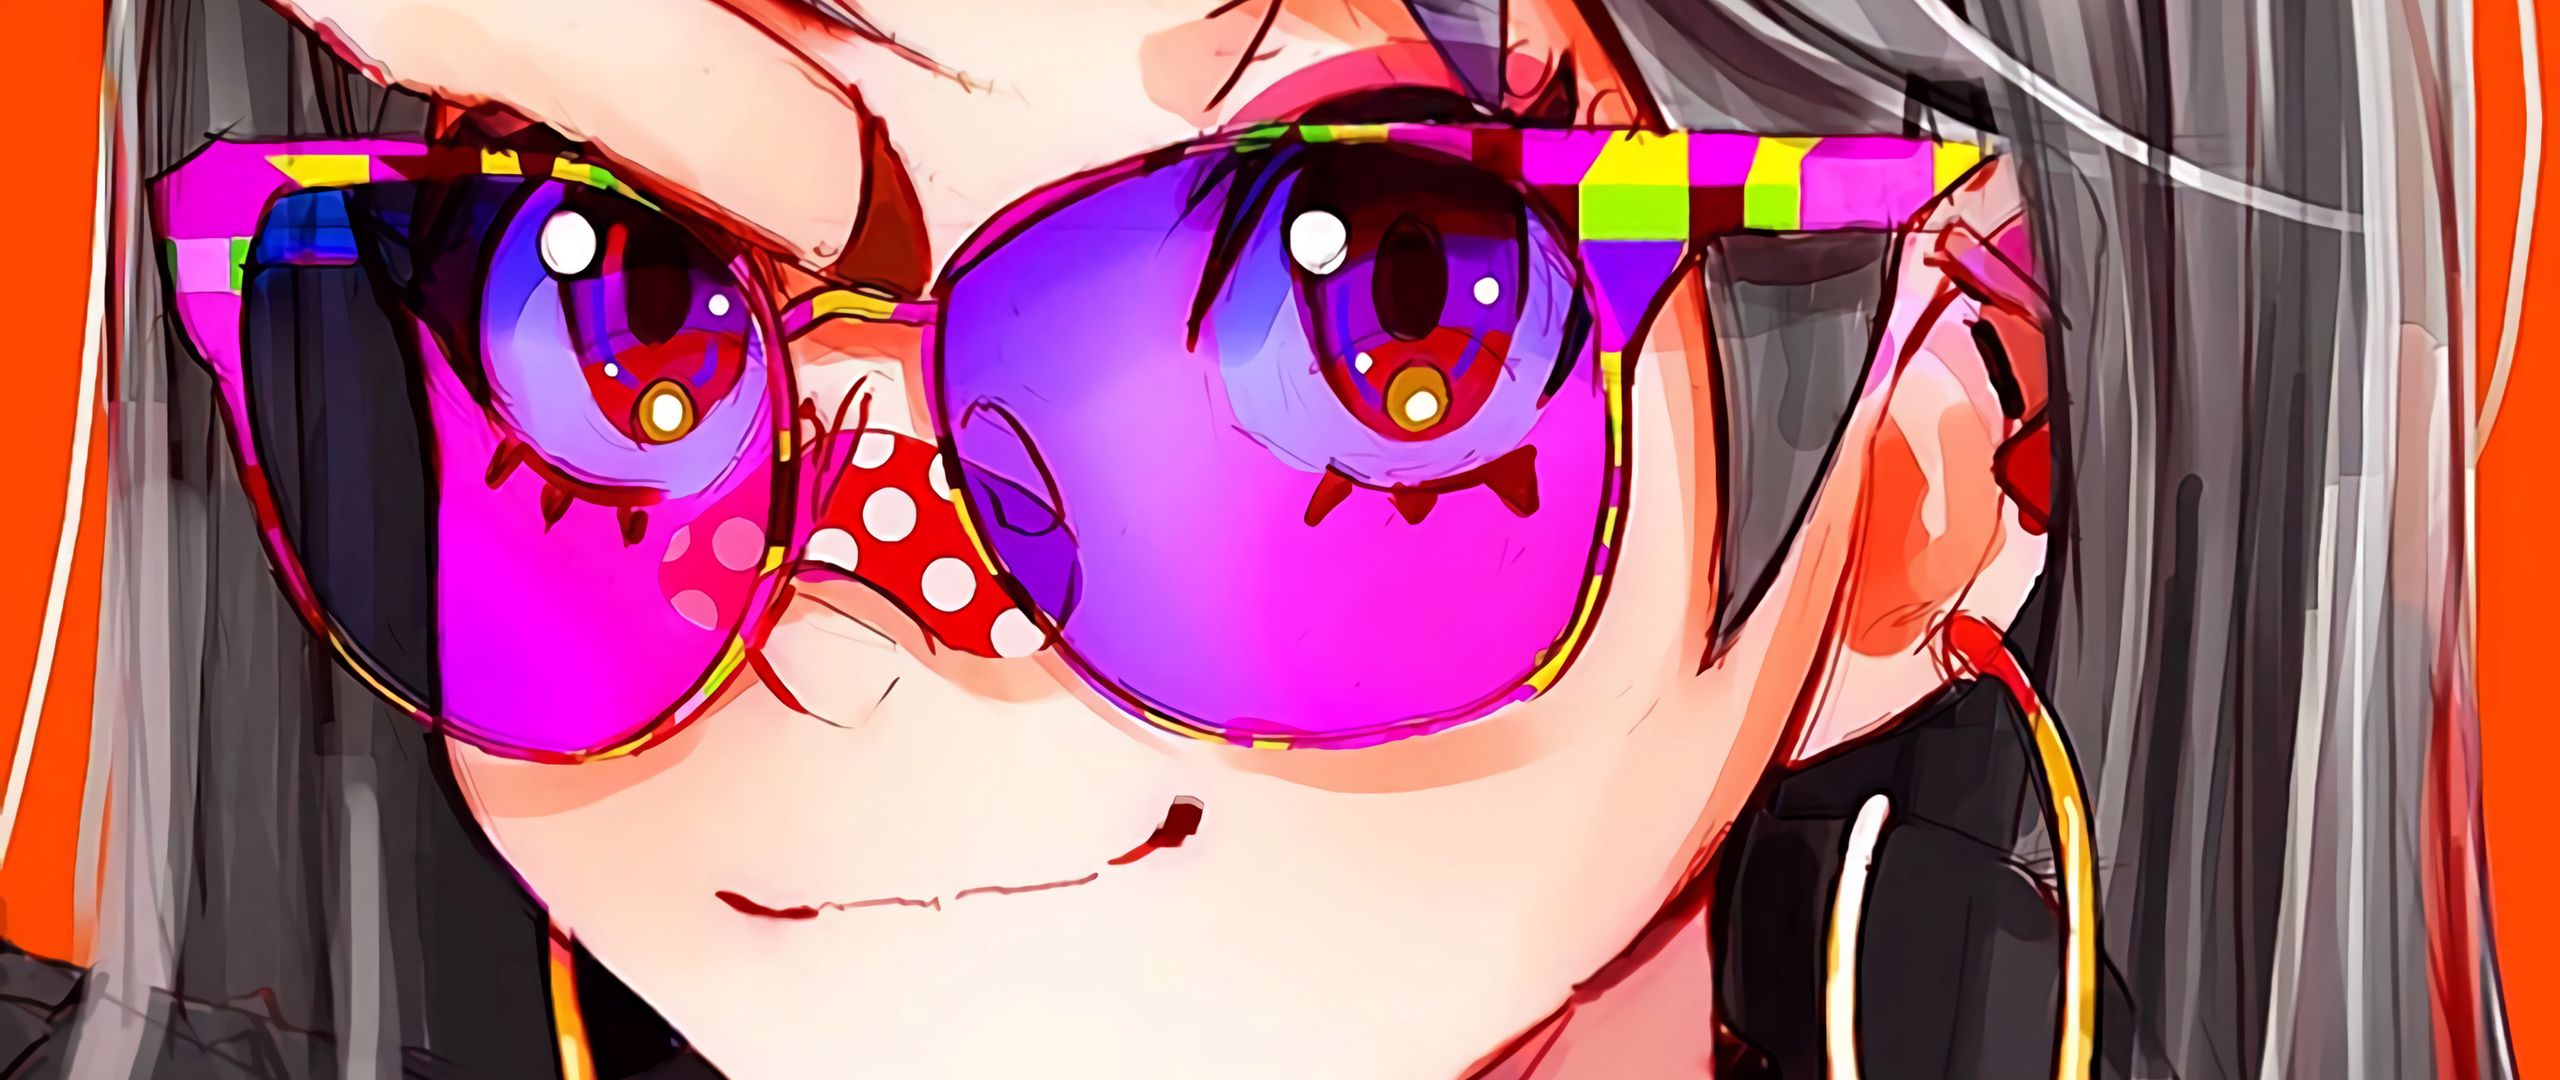 Fondos de pantalla Chica anime con lentes